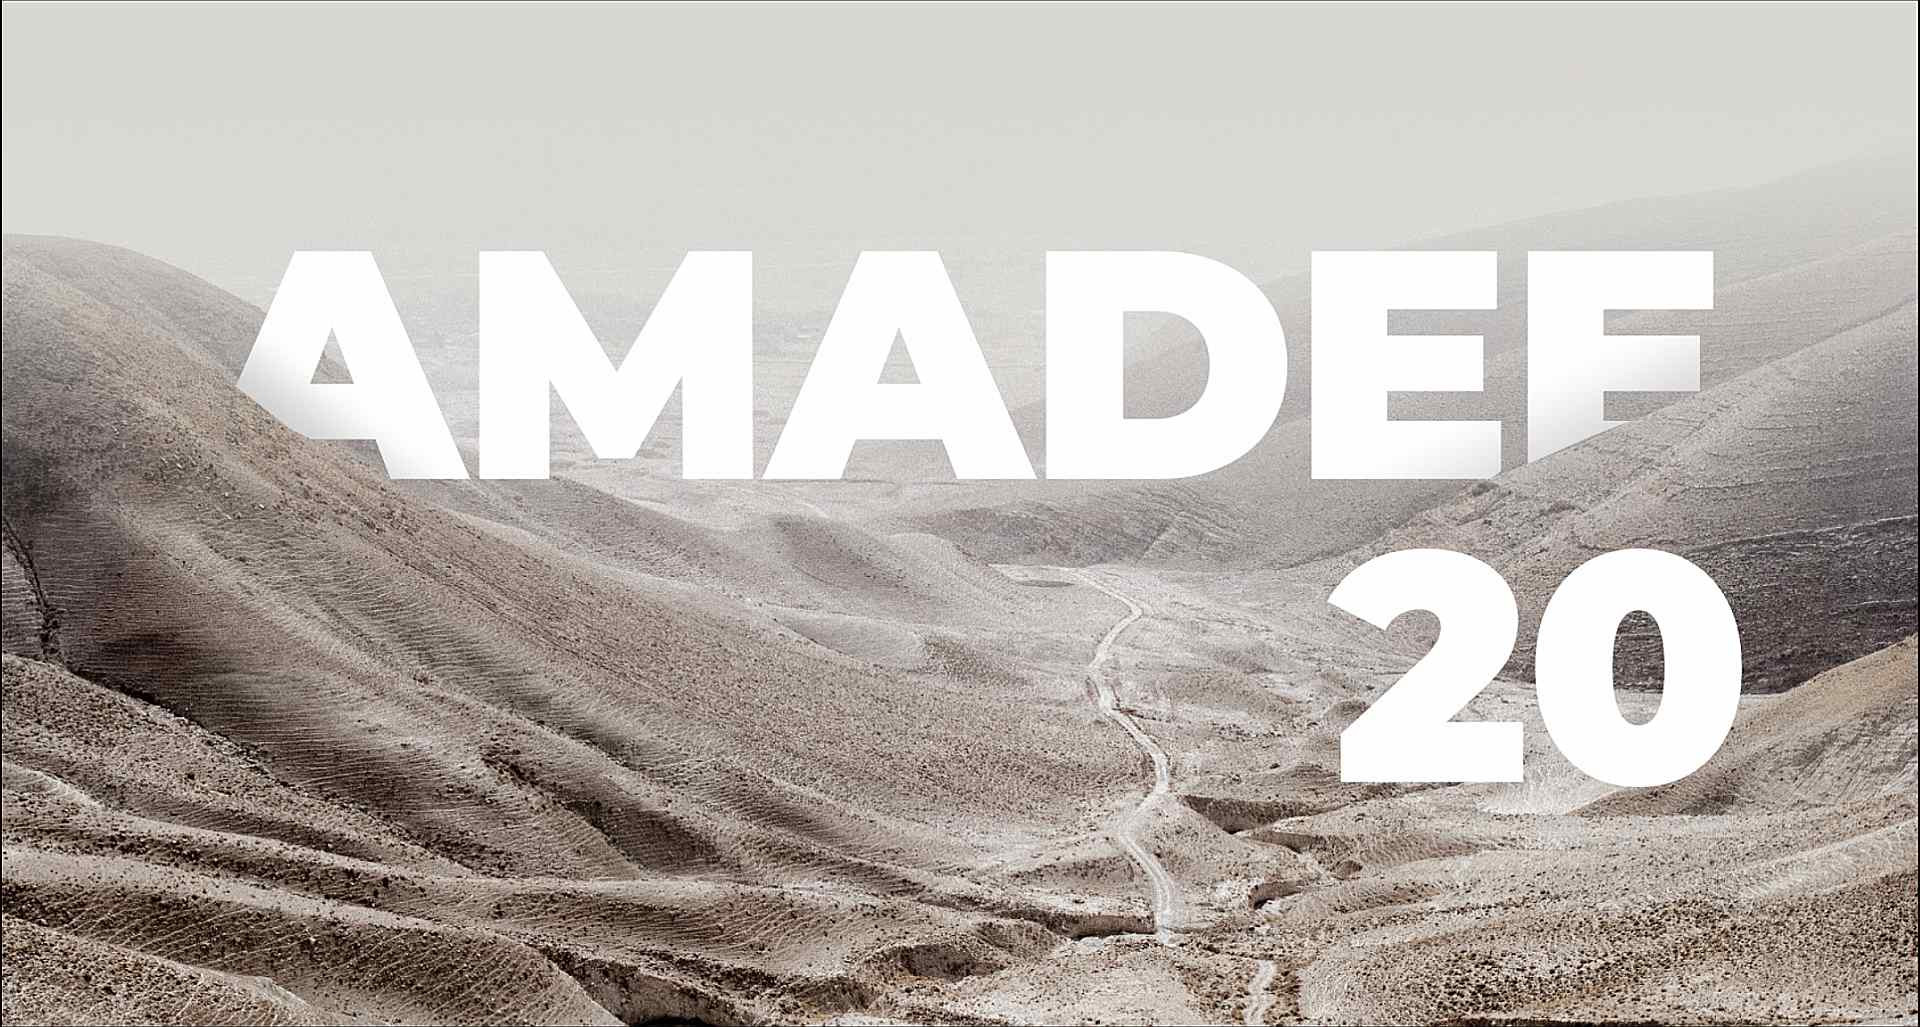 Amadee-20 - Mars Simulation in der Negev Wüste